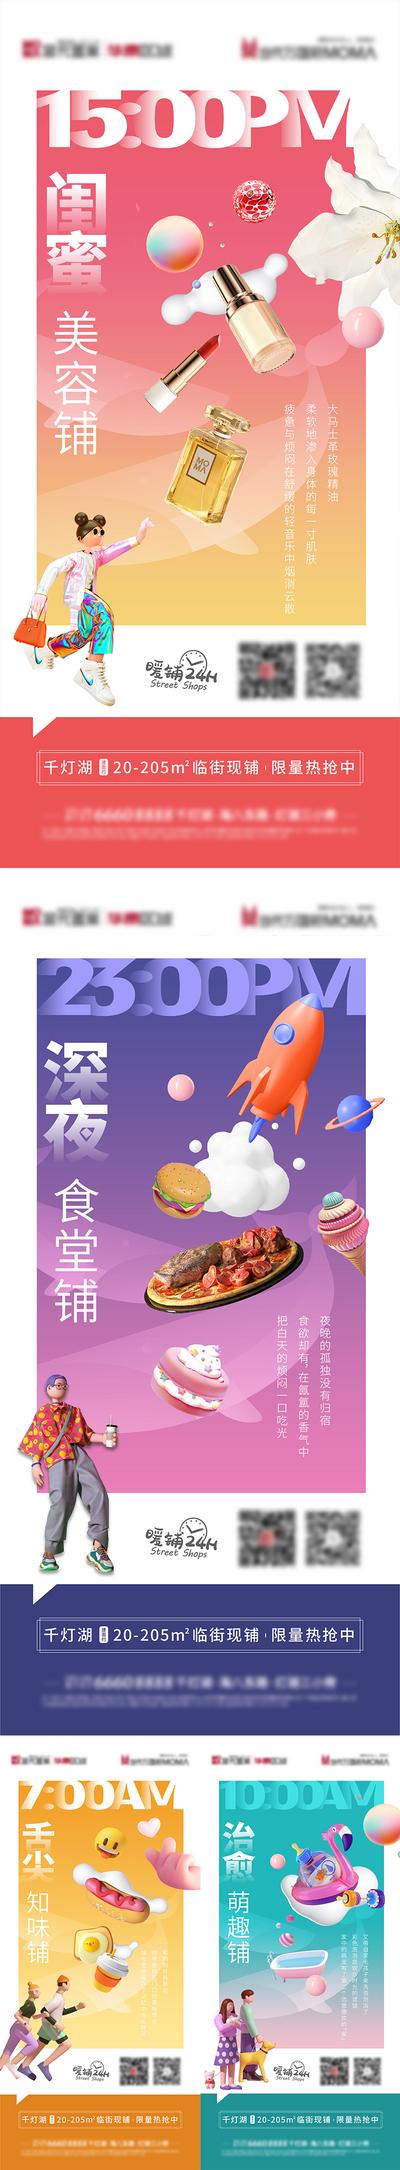 南门网 海报 双11 双12 促销 热卖 家居 抢购 活动 红色